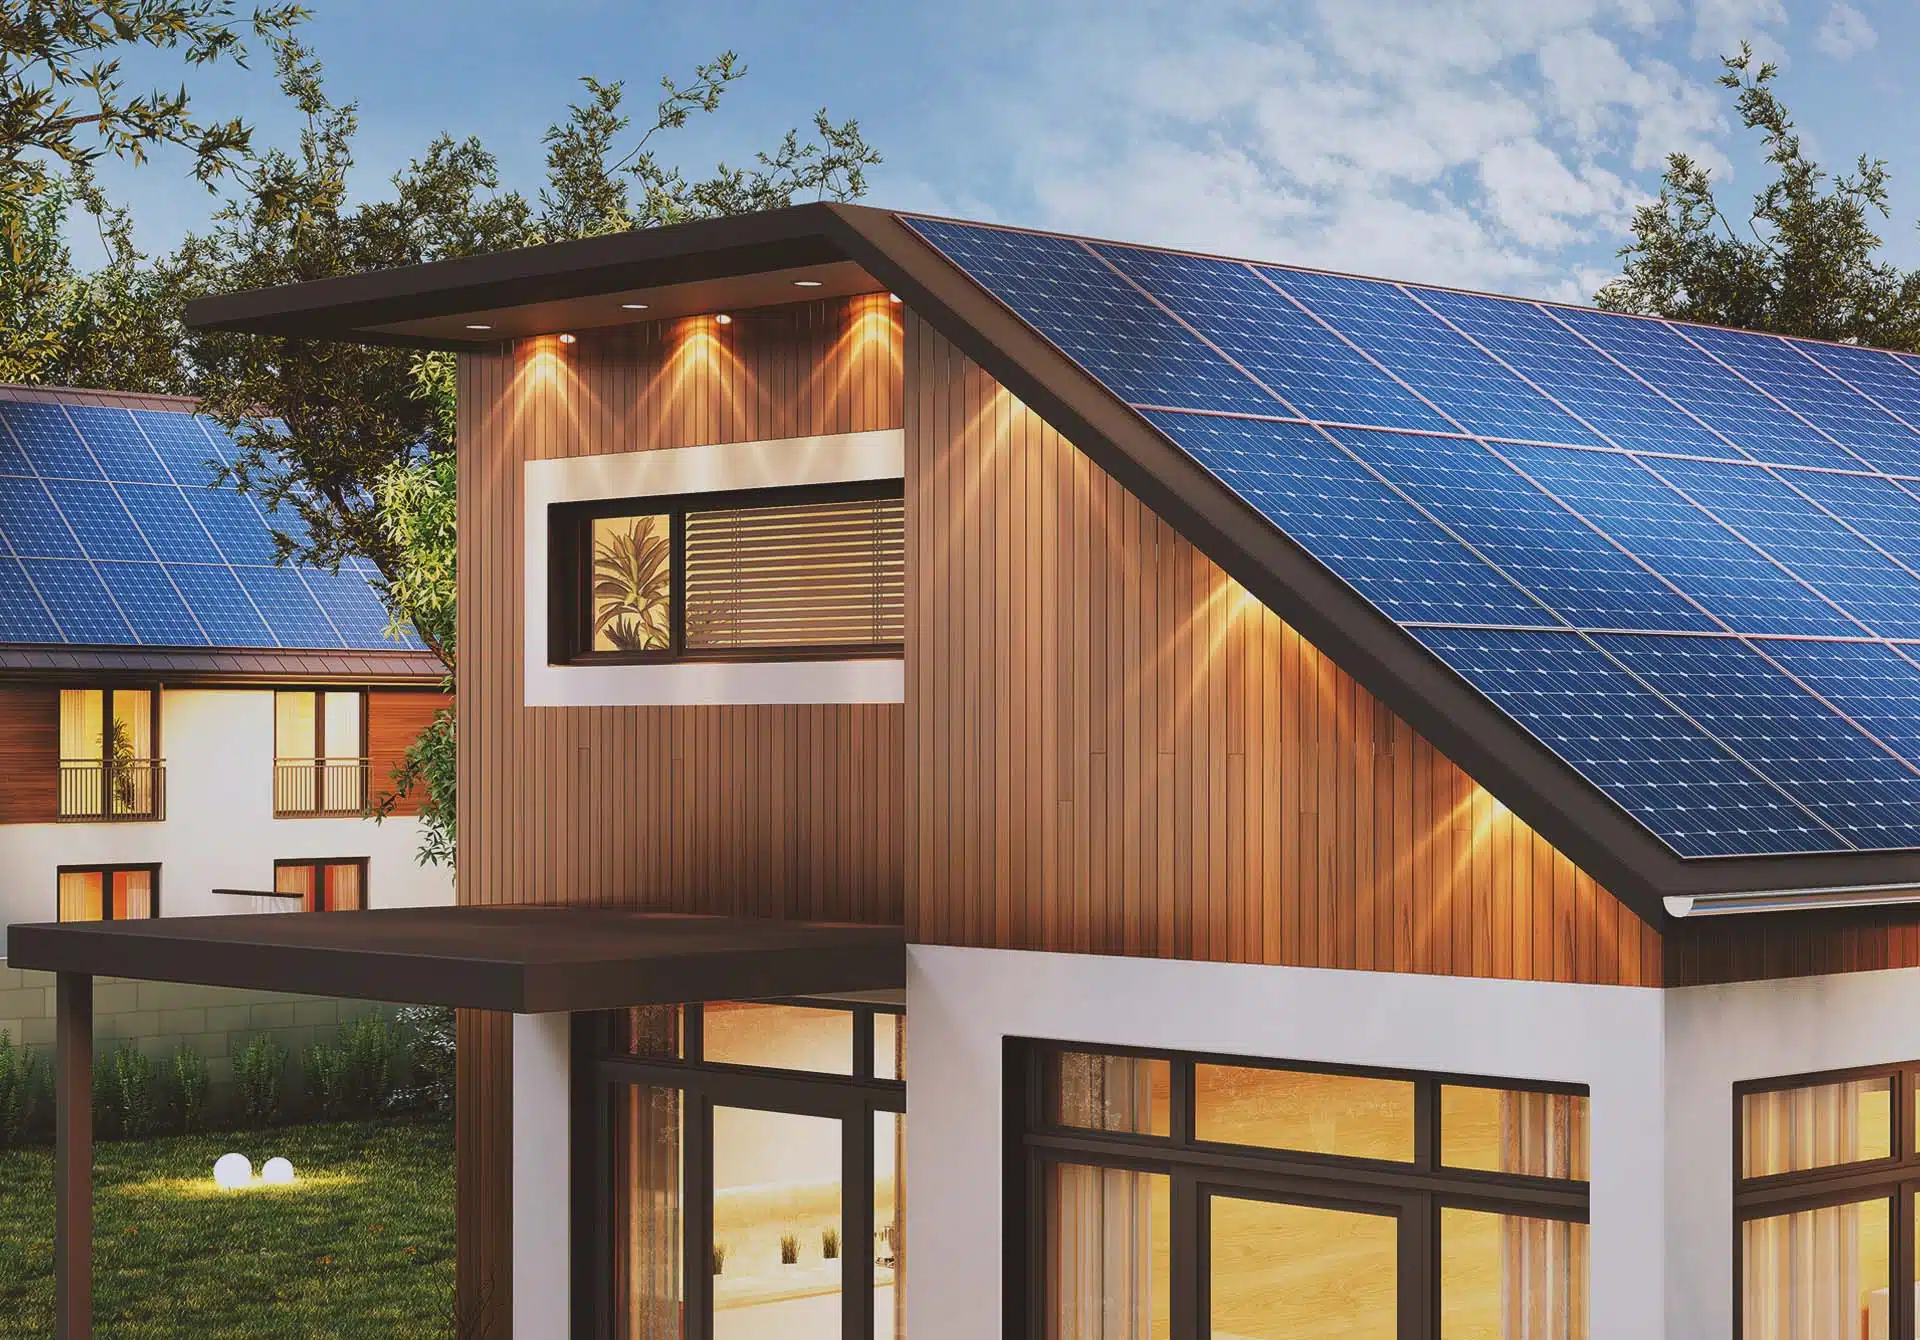 Residential Solar panels